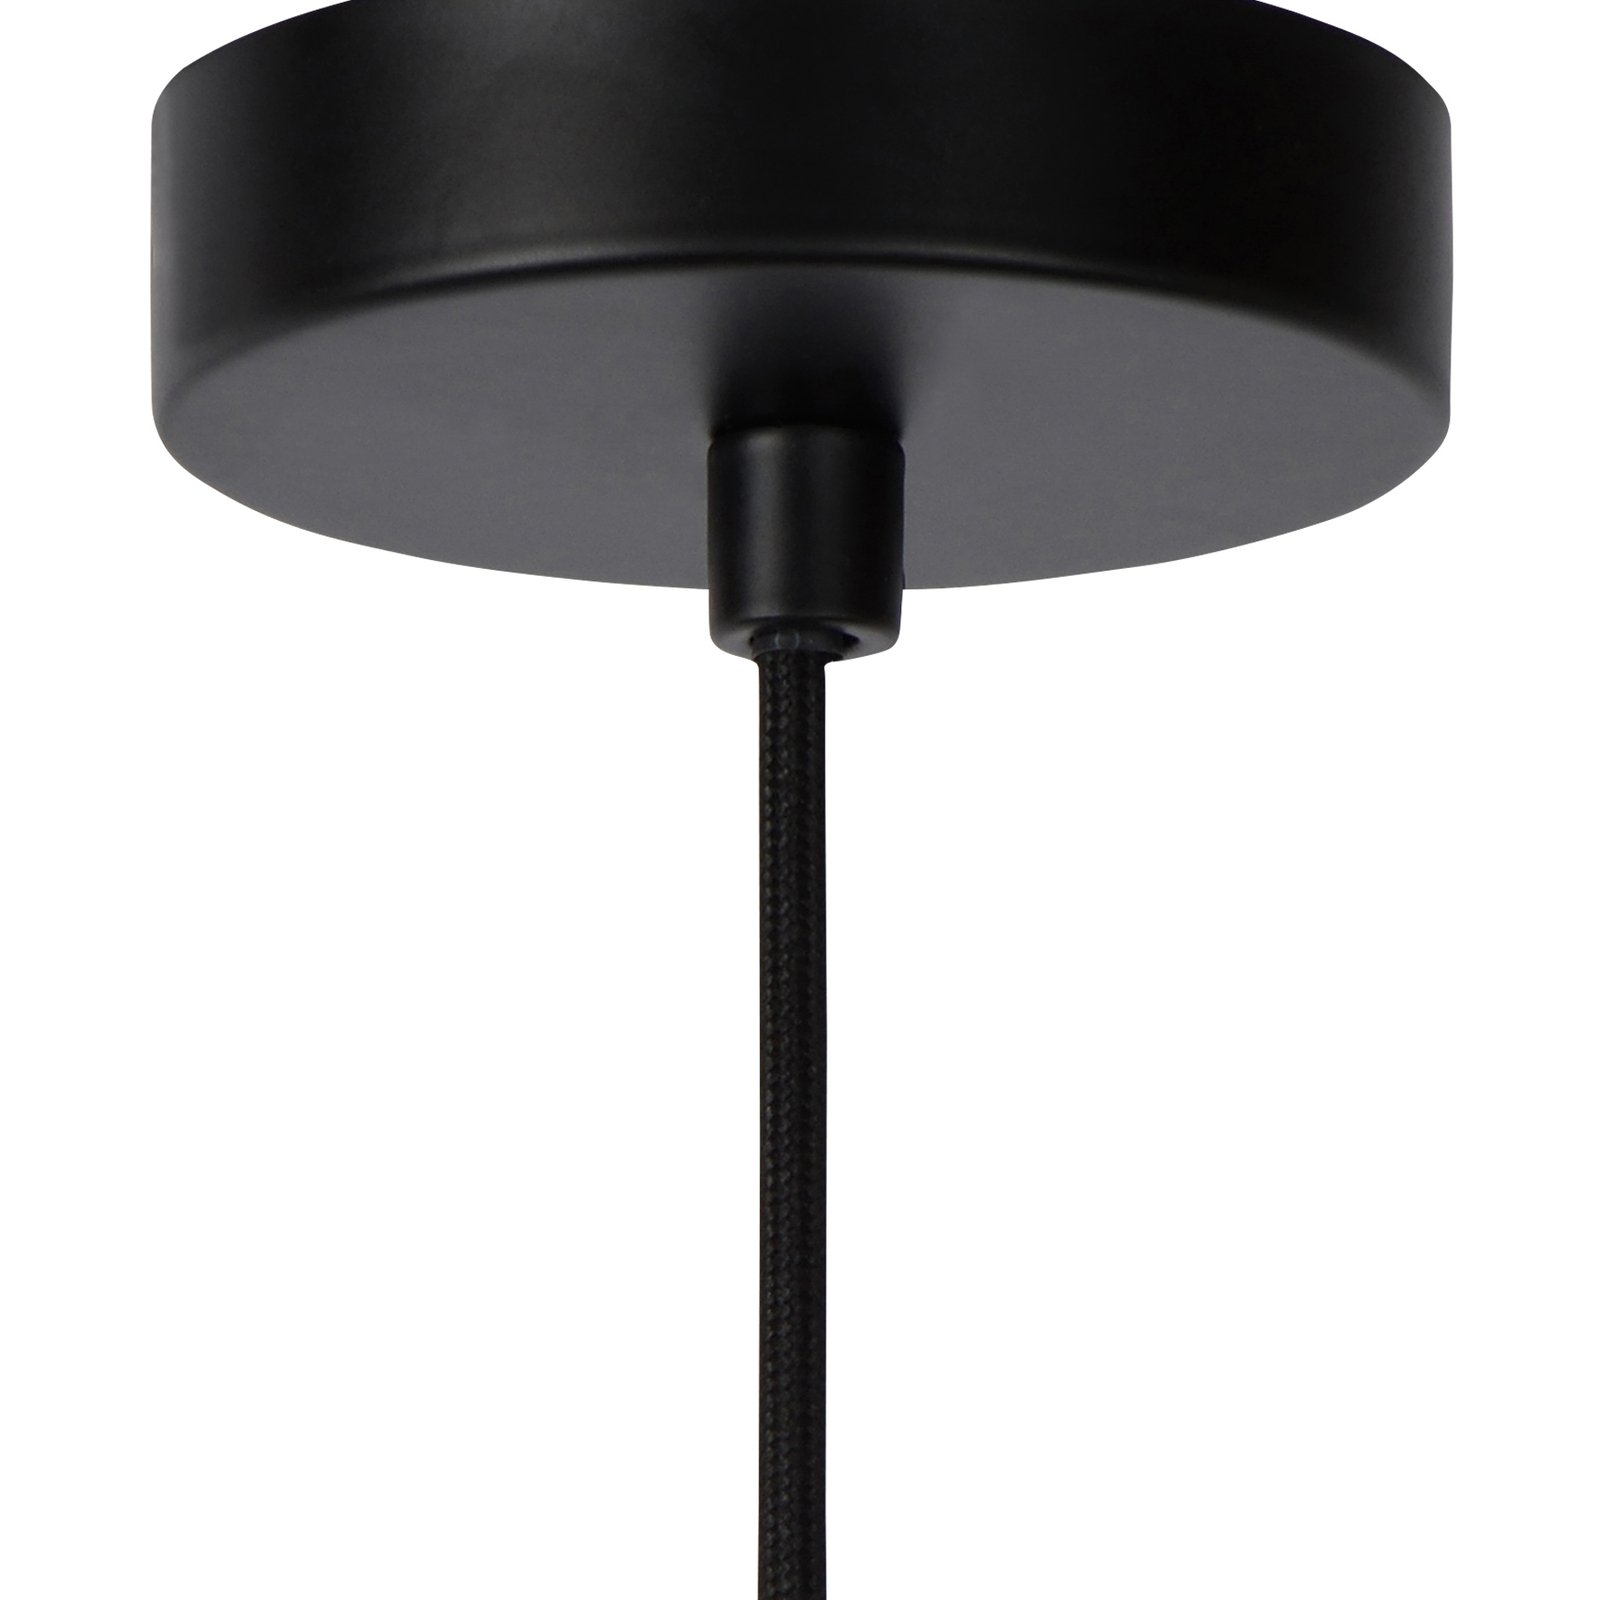 Julius hängande lampa, enkel belysning, rökgrå, Ø 28 cm